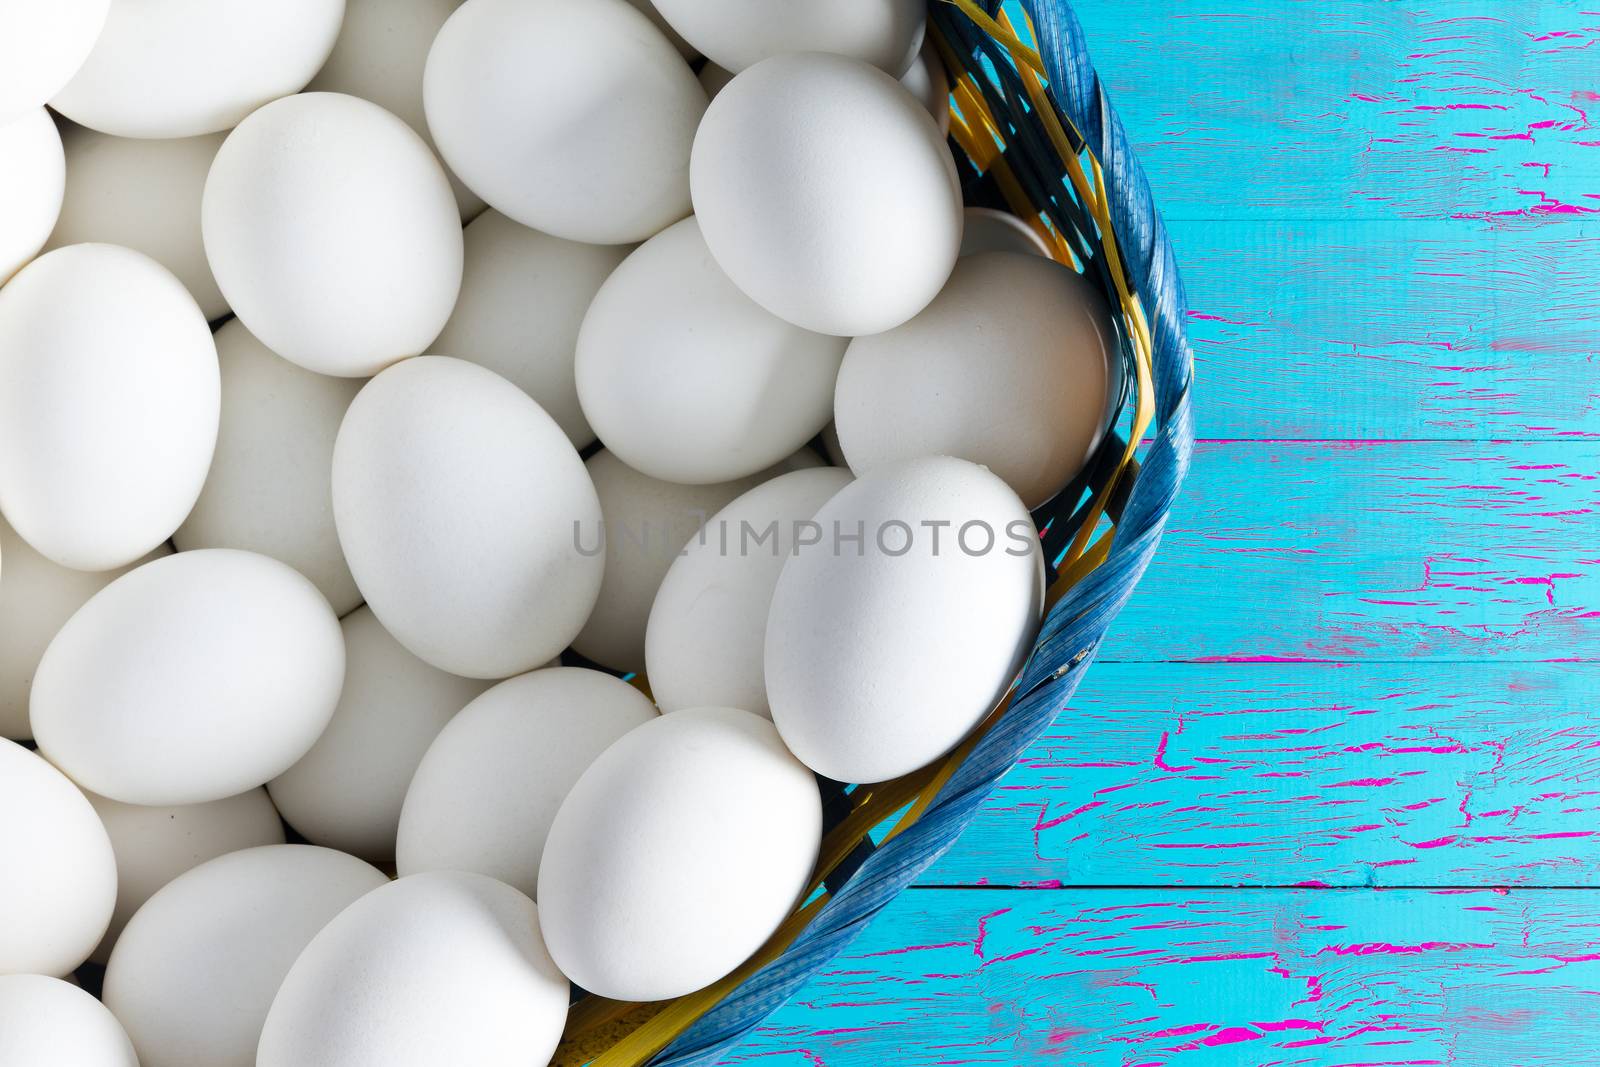 Wicker basket of farm fresh white hens eggs by coskun